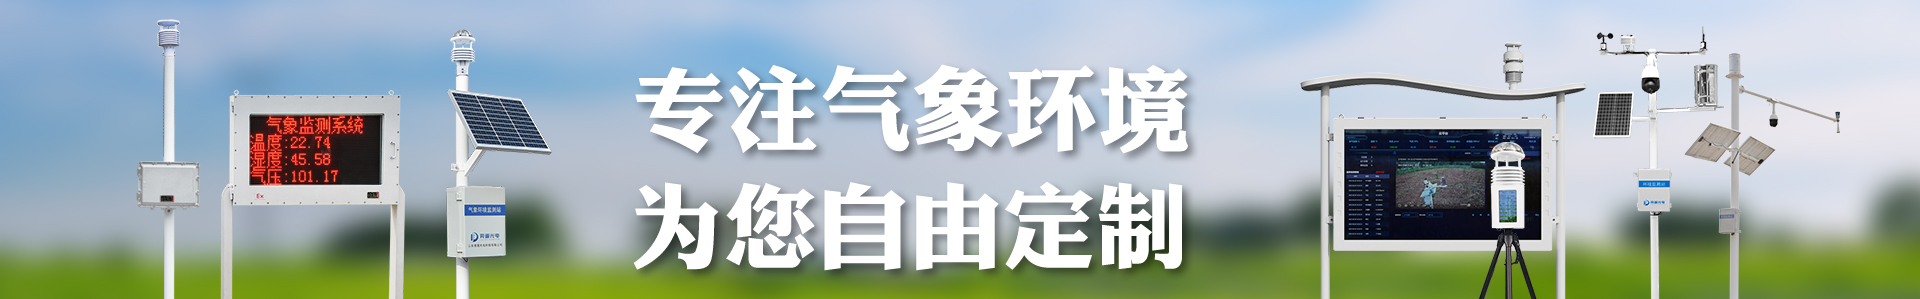 小麦赤霉病监测仪-小麦病虫害-自动气象站-小型气象站-防爆气象站-光伏气象站-开元旗牌·(中国)官方网站